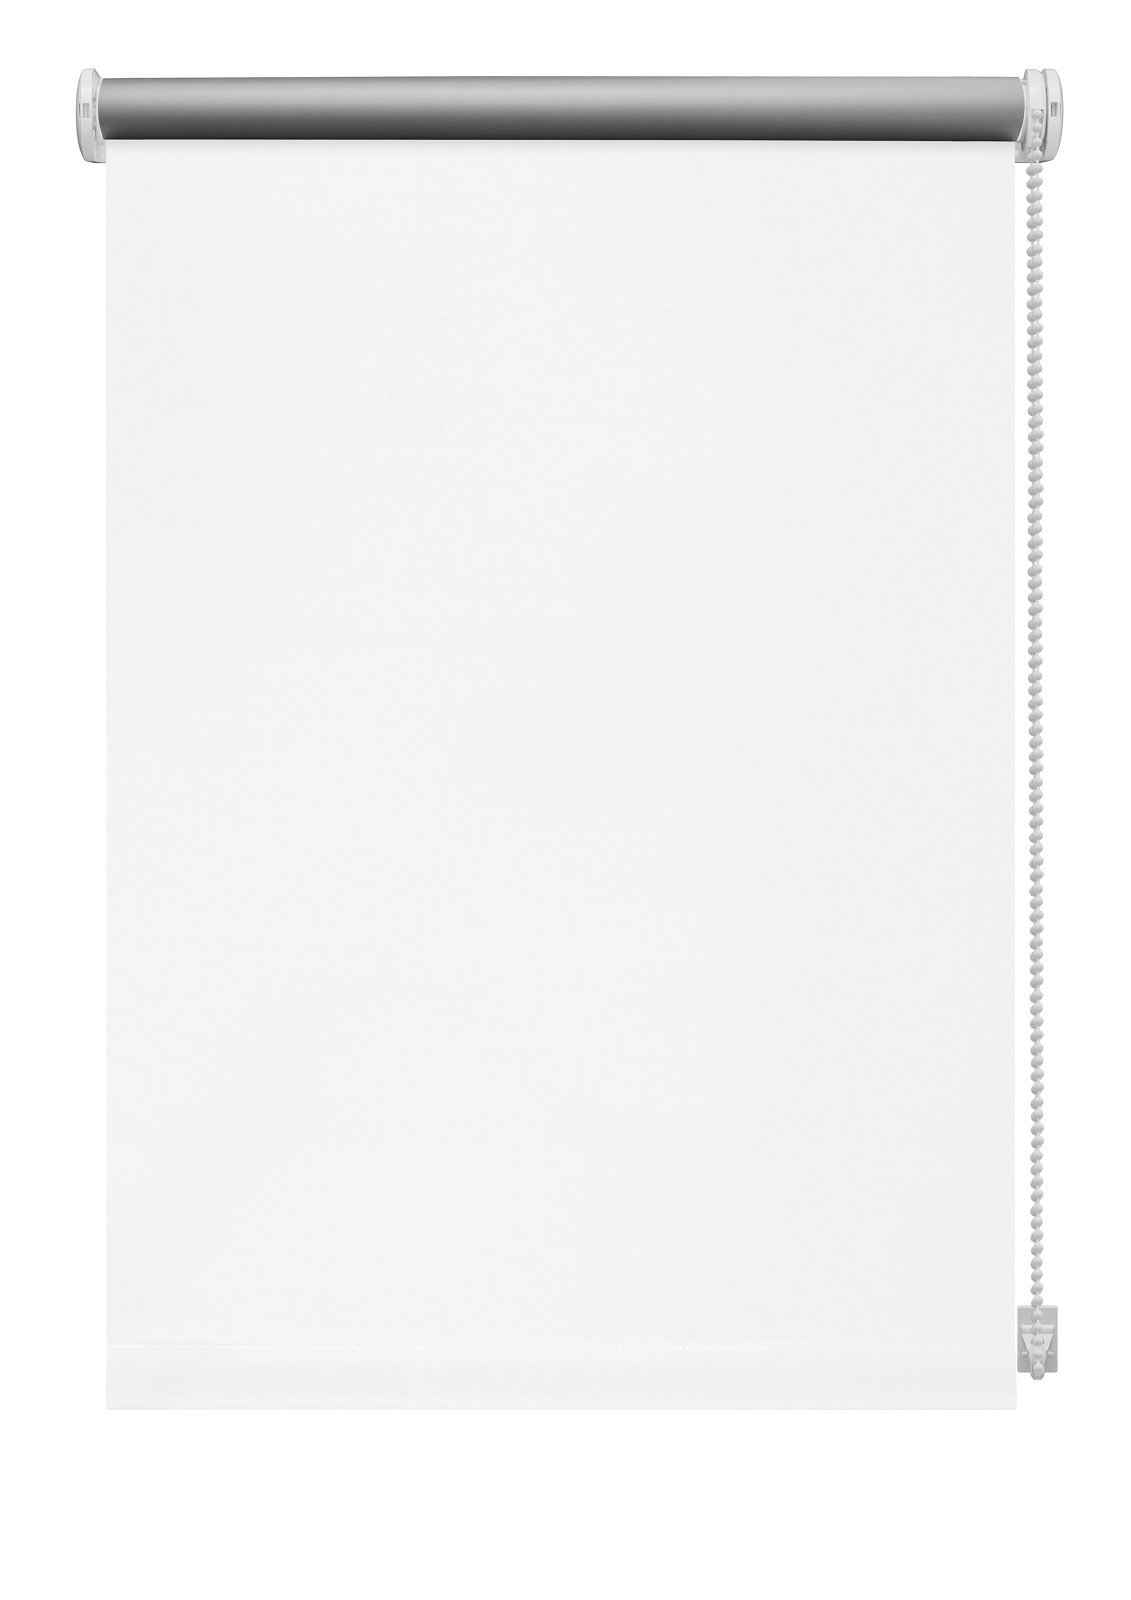 Klasikinė ritininė užuolaida THERMO 905, baltos sp., 100 x 210 cm - 2